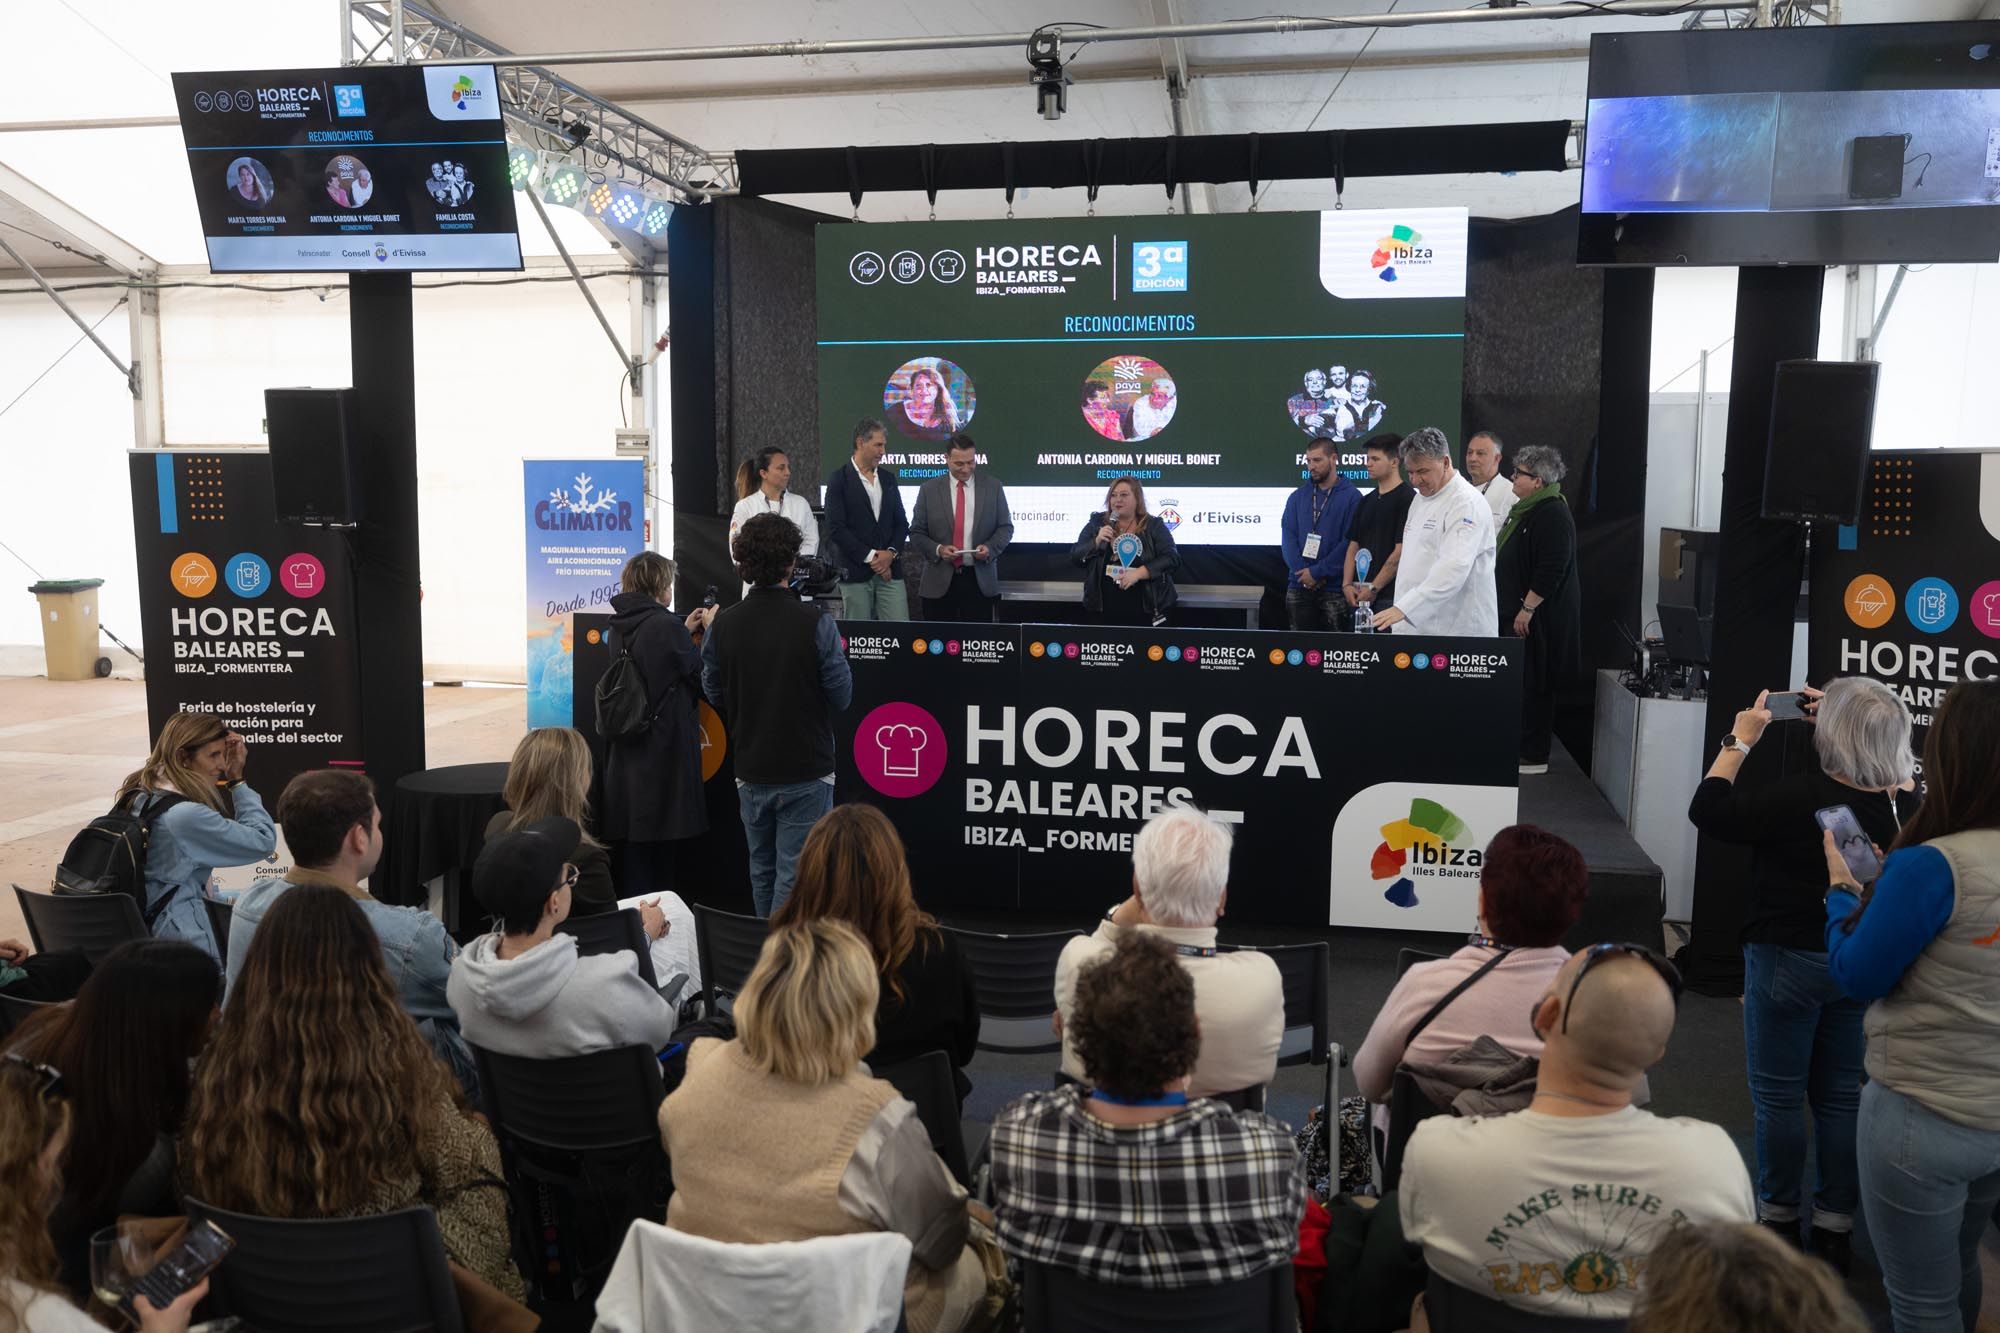 Segunda jornada de Horeca Baleares en el Recinto Ferial de Ibiza